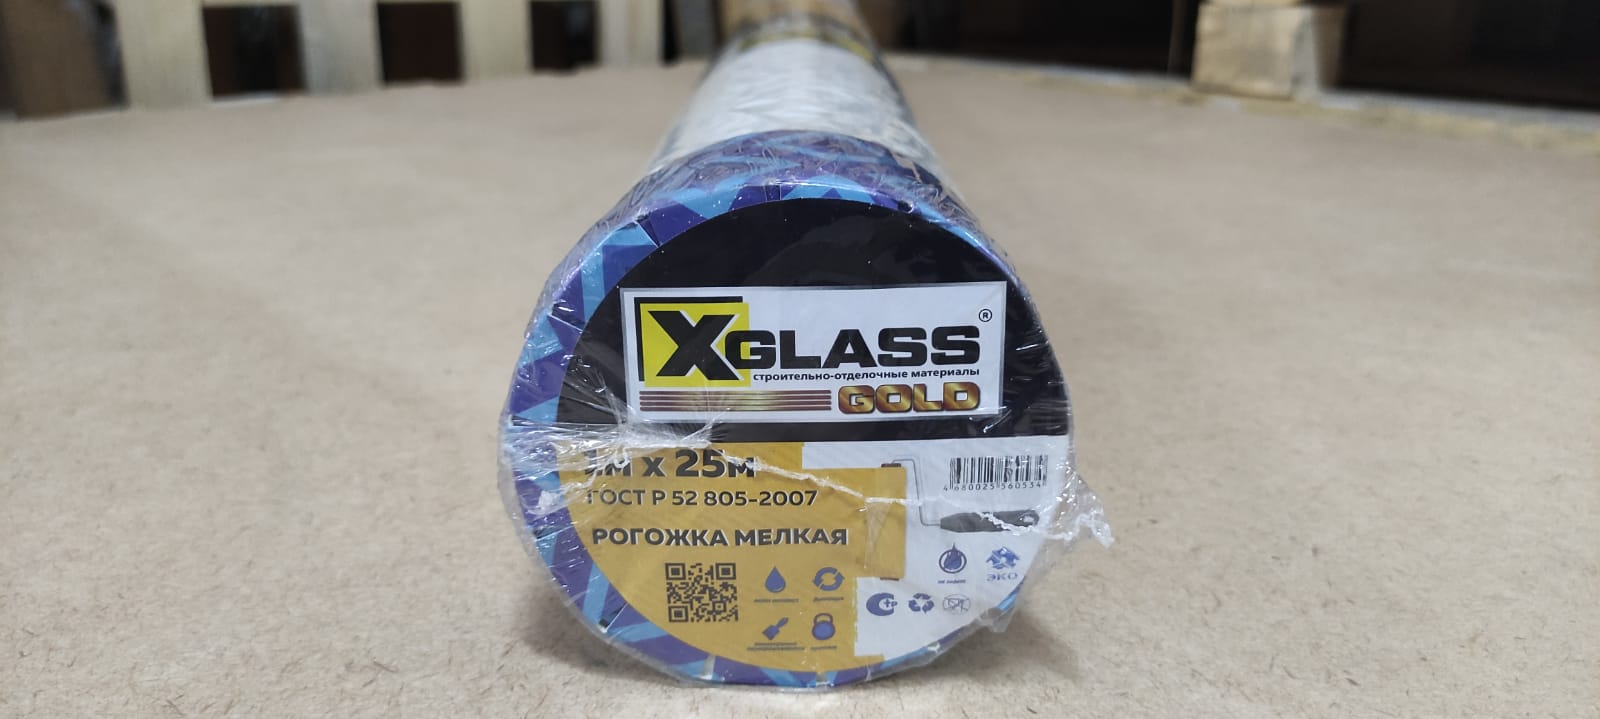 Стеклообои X-Glass GOLD рогожка мелкая XGd 120/25 1 x 25 м белые